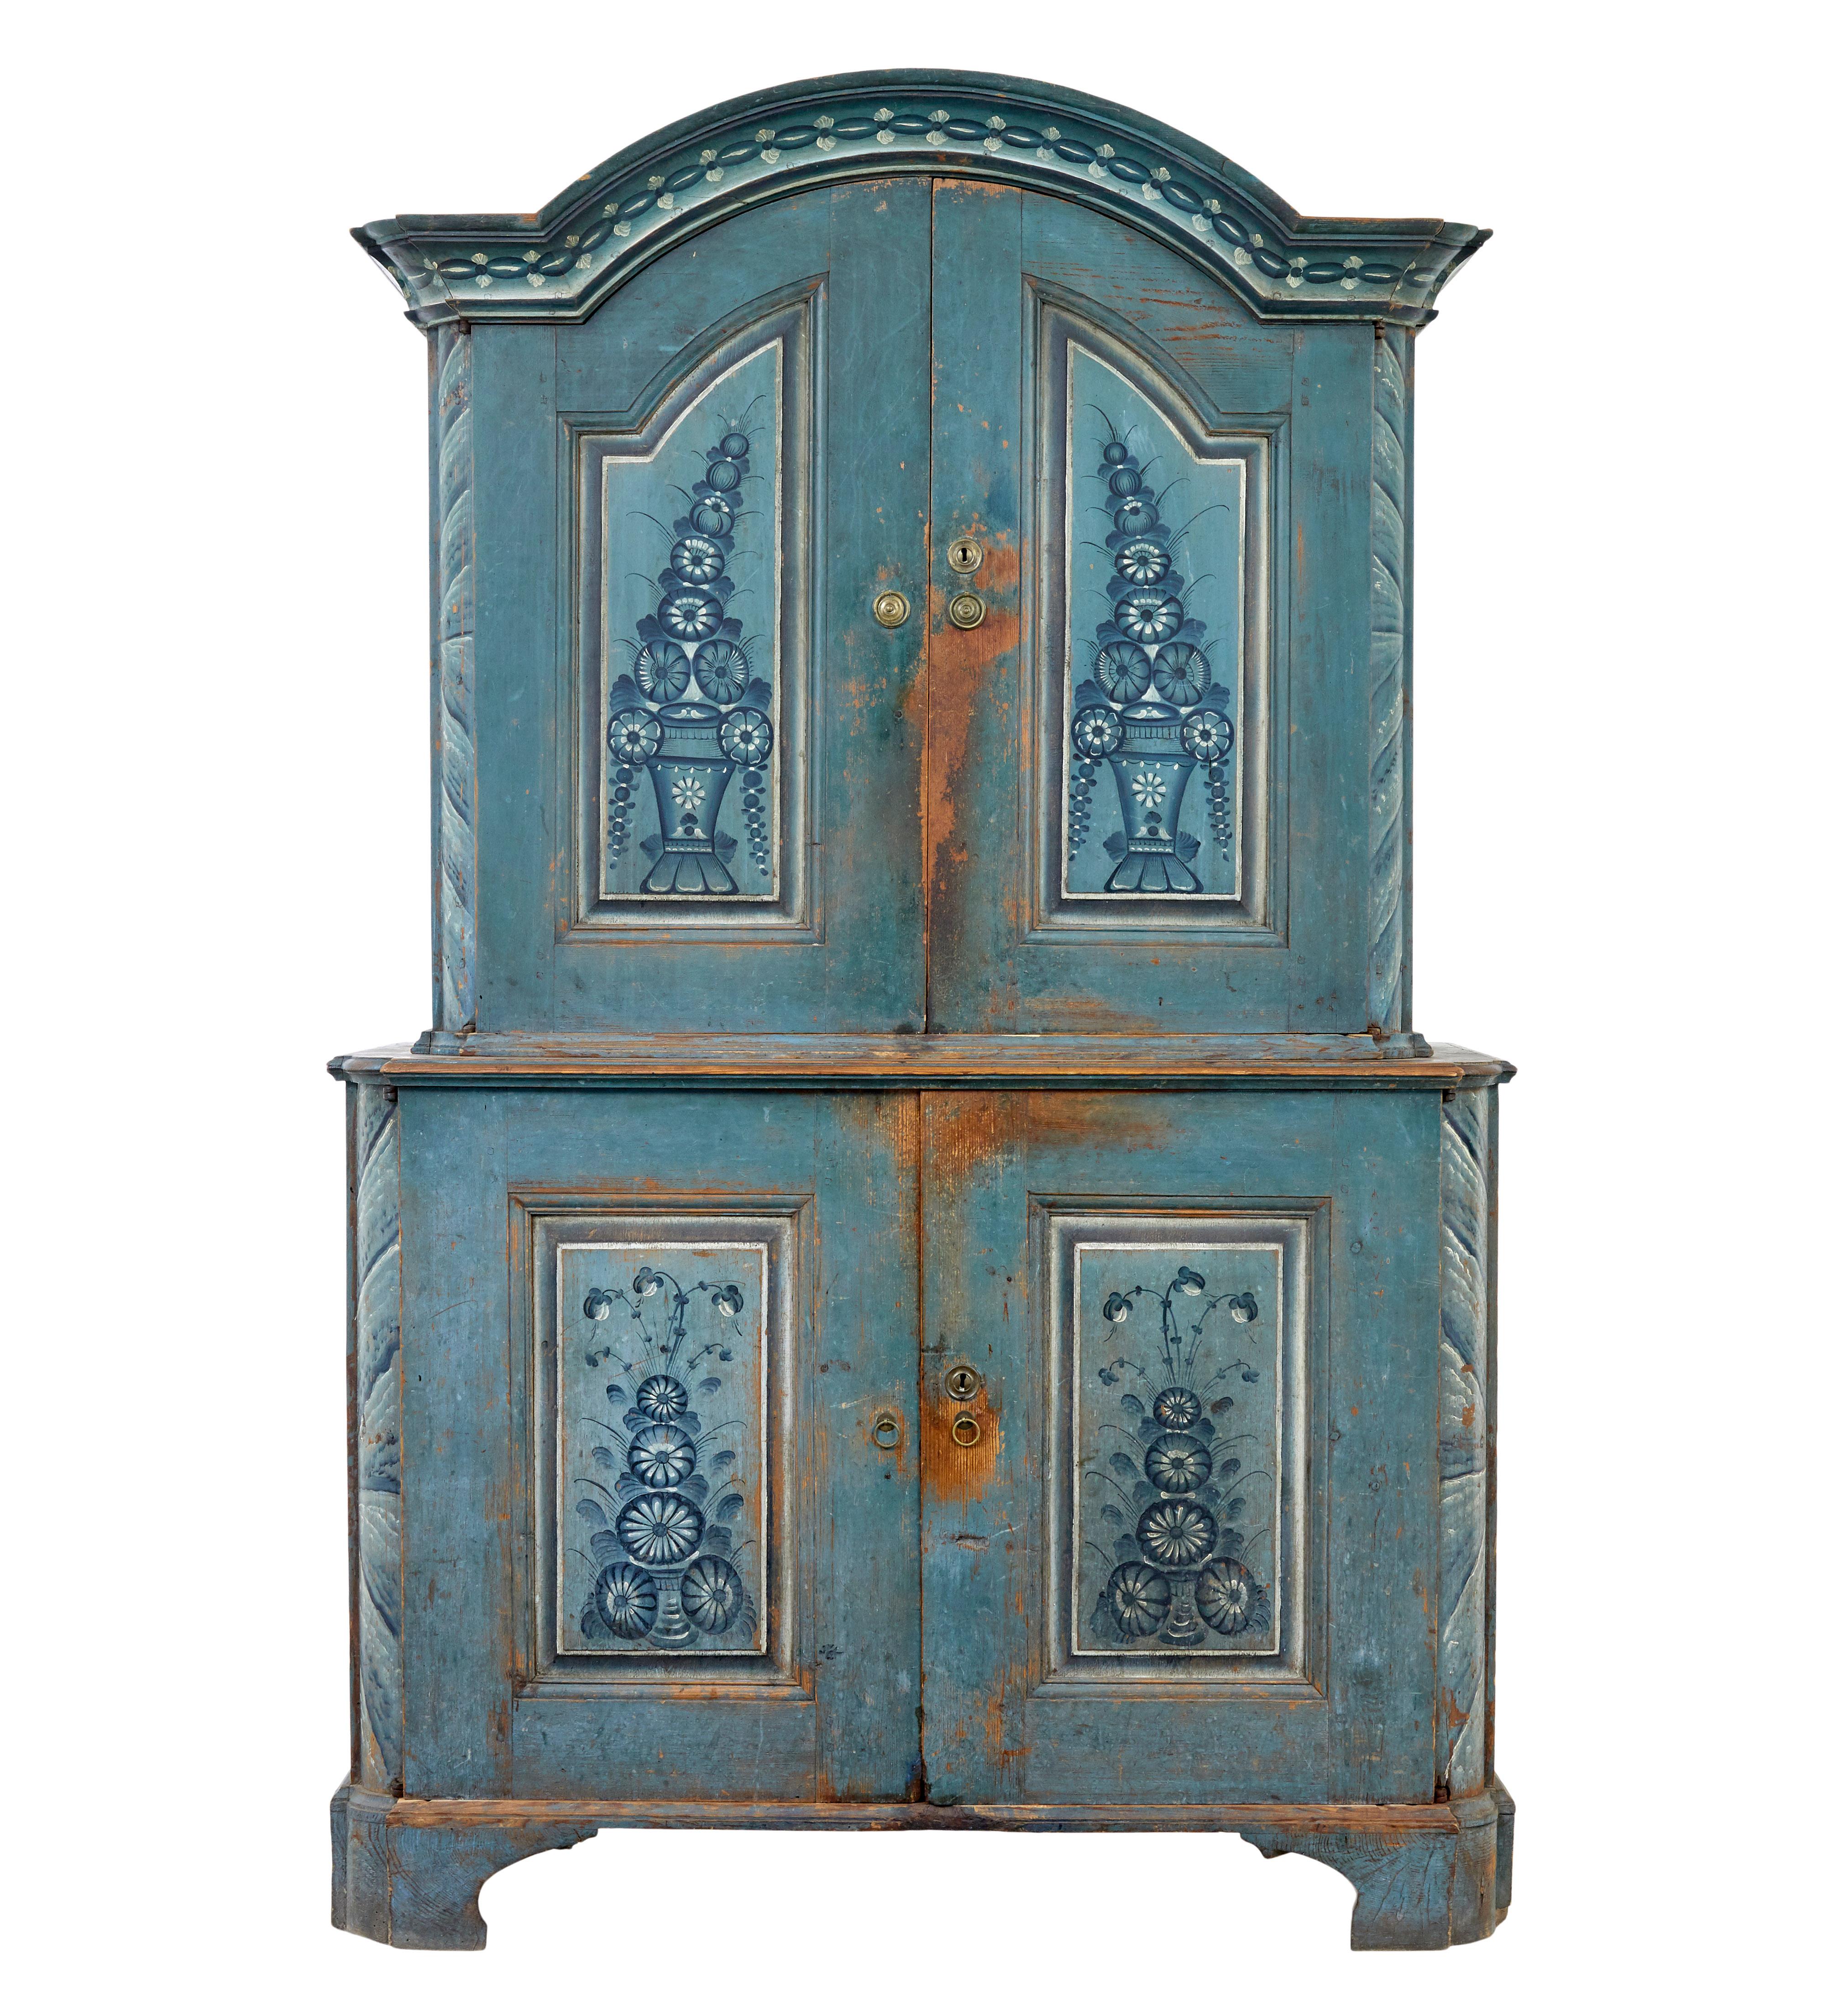 Nous avons le plaisir de vous proposer ce rare meuble traditionnel datant de 1801.

Cette pièce a été fabriquée et peinte dans un village appelé tuna (tuna måleri), près de Calle et du Hälsingland.  Ce type de peinture n'a été réalisé que pendant